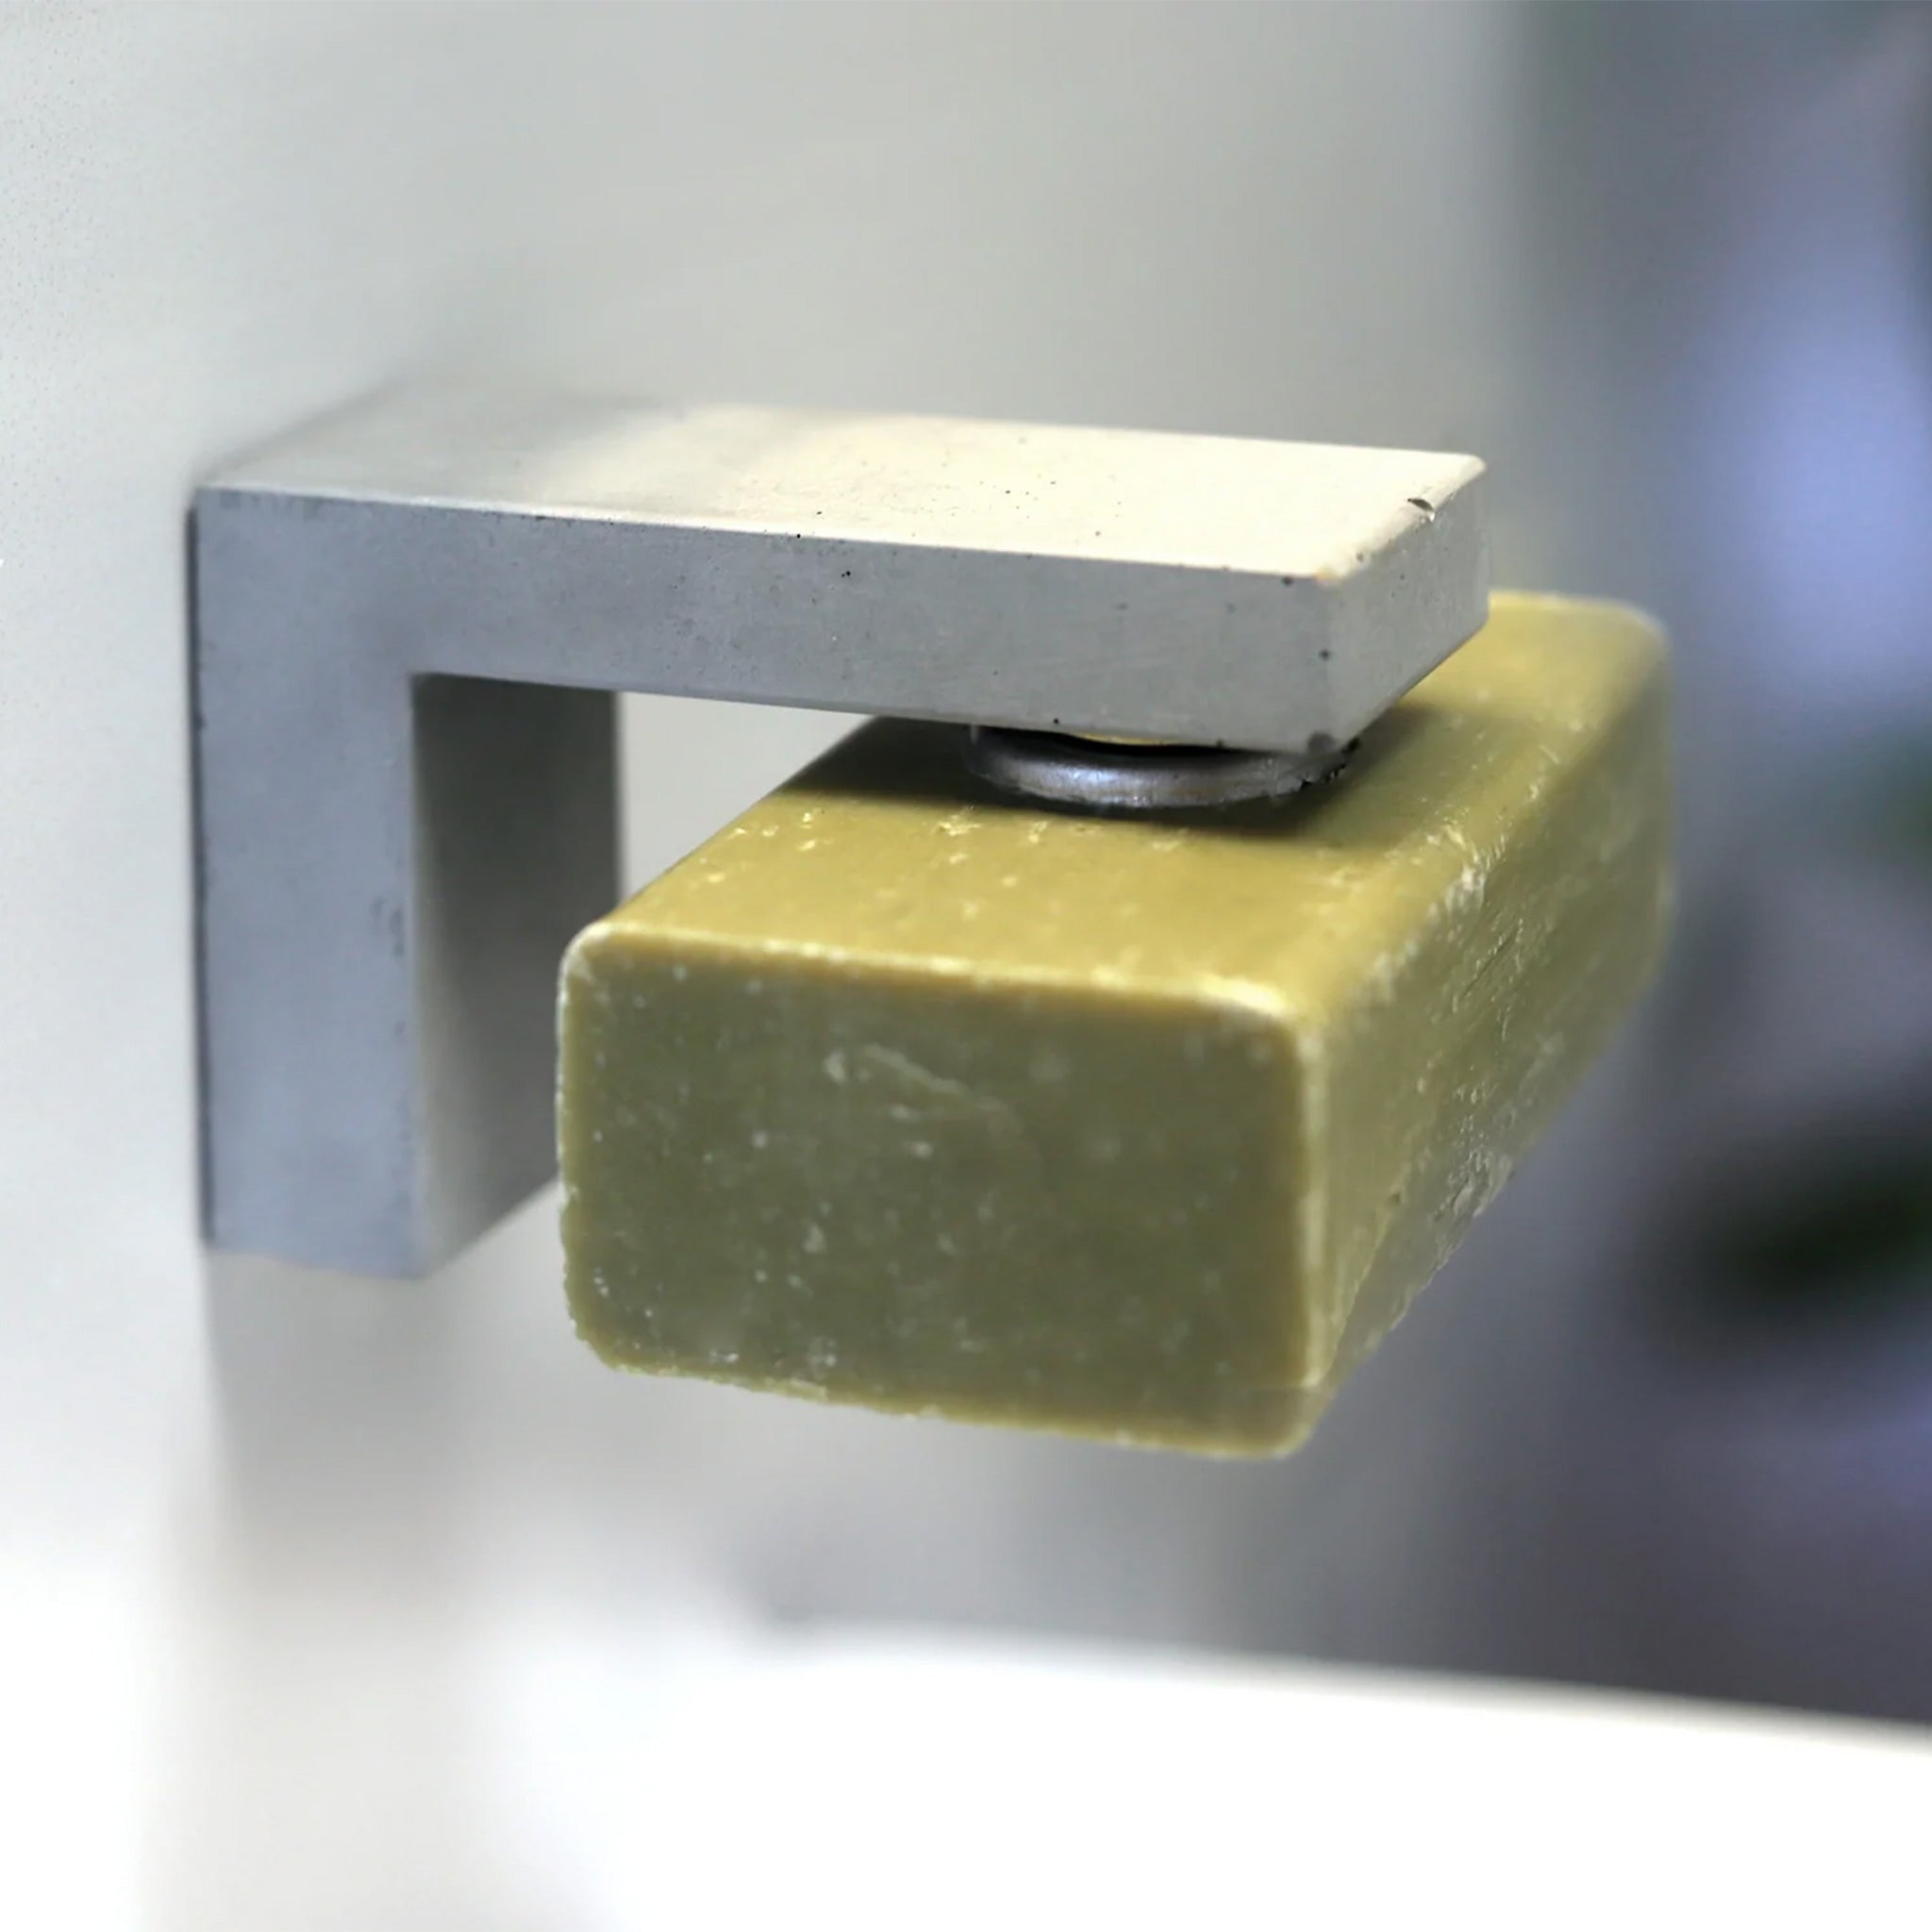 Seifenhalter "Beton" mit Magnet – 4 x 6 x 8 cm (B/H/T)